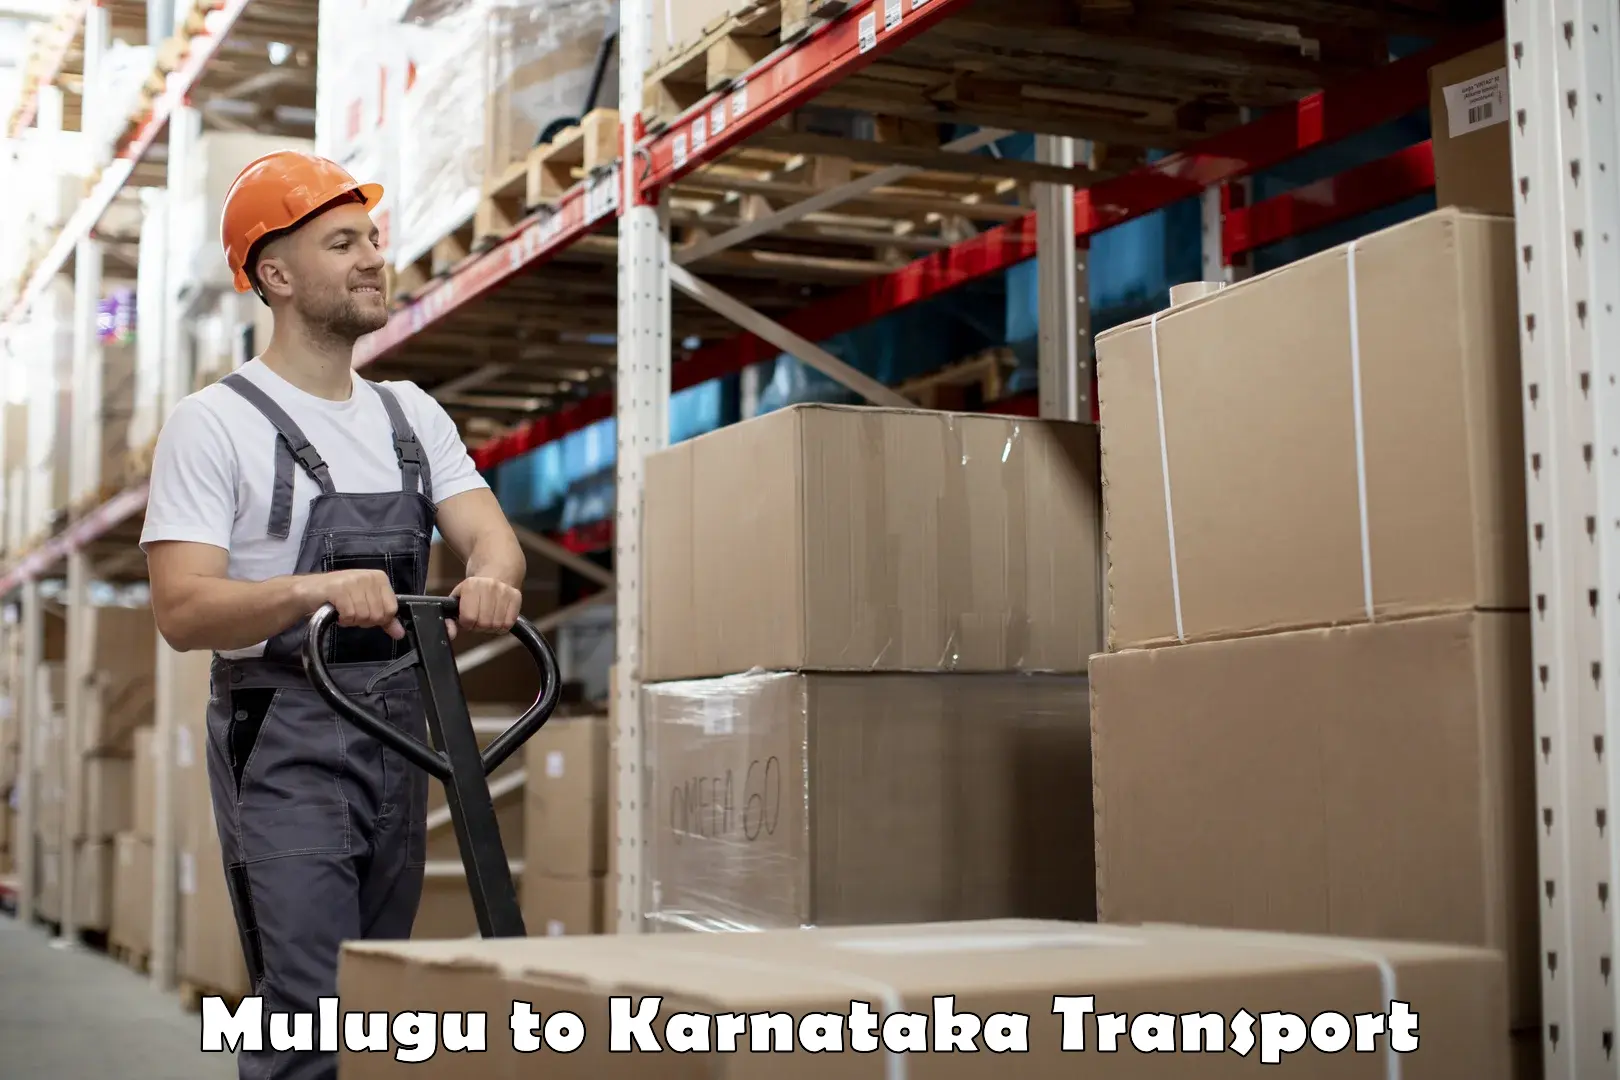 Furniture transport service Mulugu to Shorapur